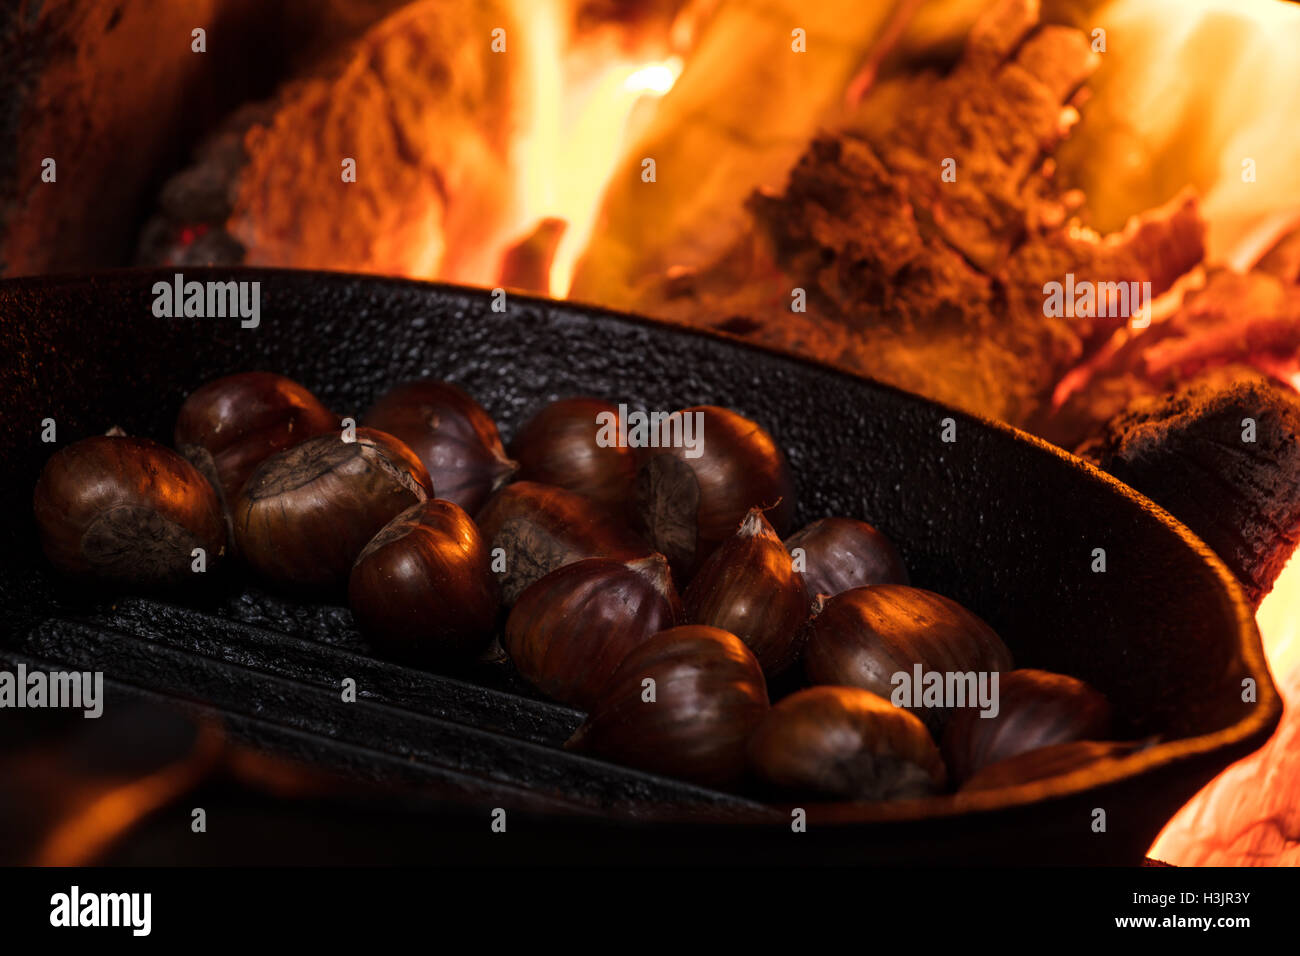 Chess nuss royting oyn orn ofen fyeyeyeye.🎶 #chestnutsroastingonan, chestnuts roasting on an open fire guy